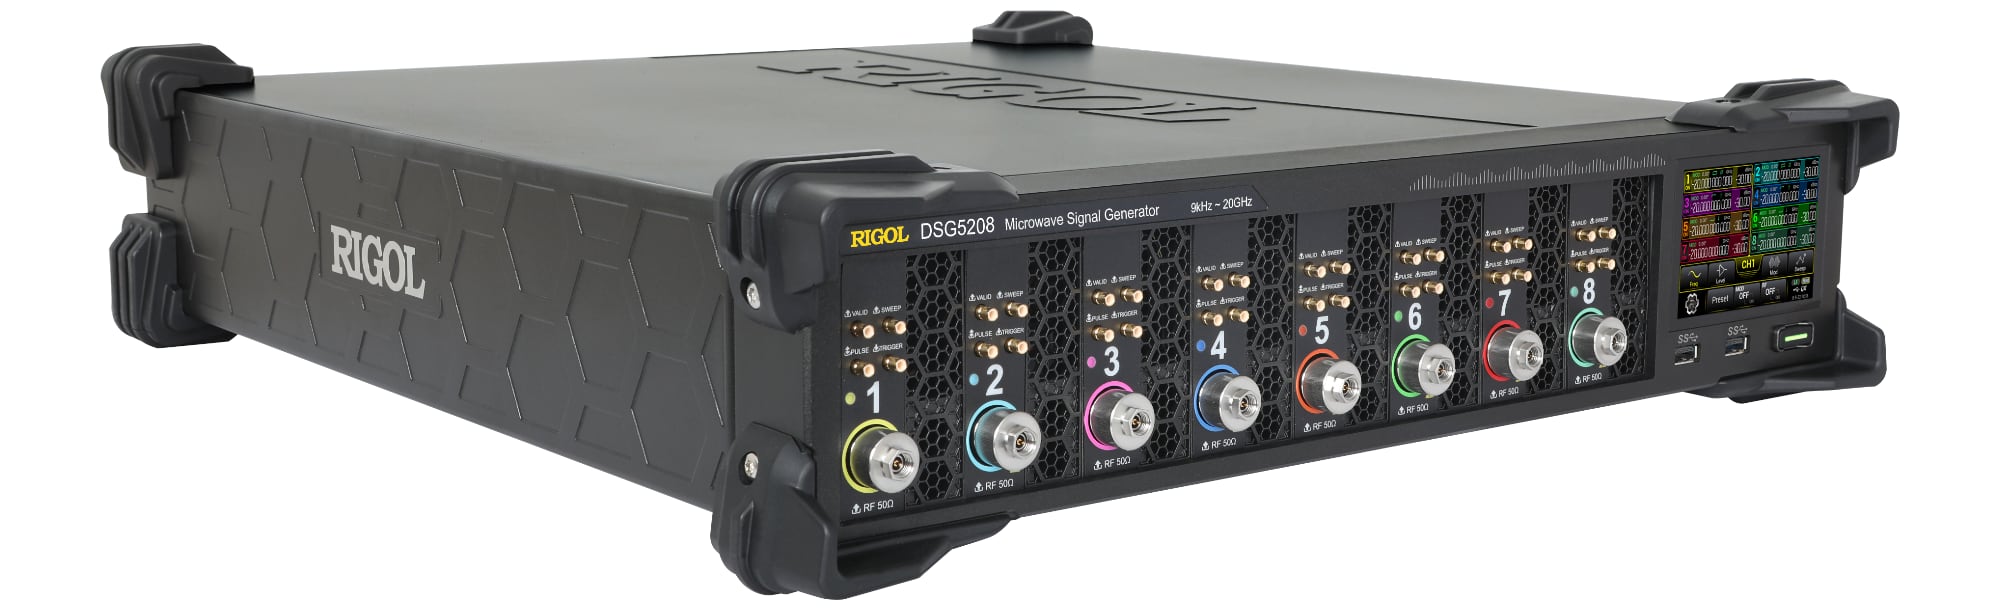 RIGOL DSG5000 – новая серия генераторов РЧ сигналов